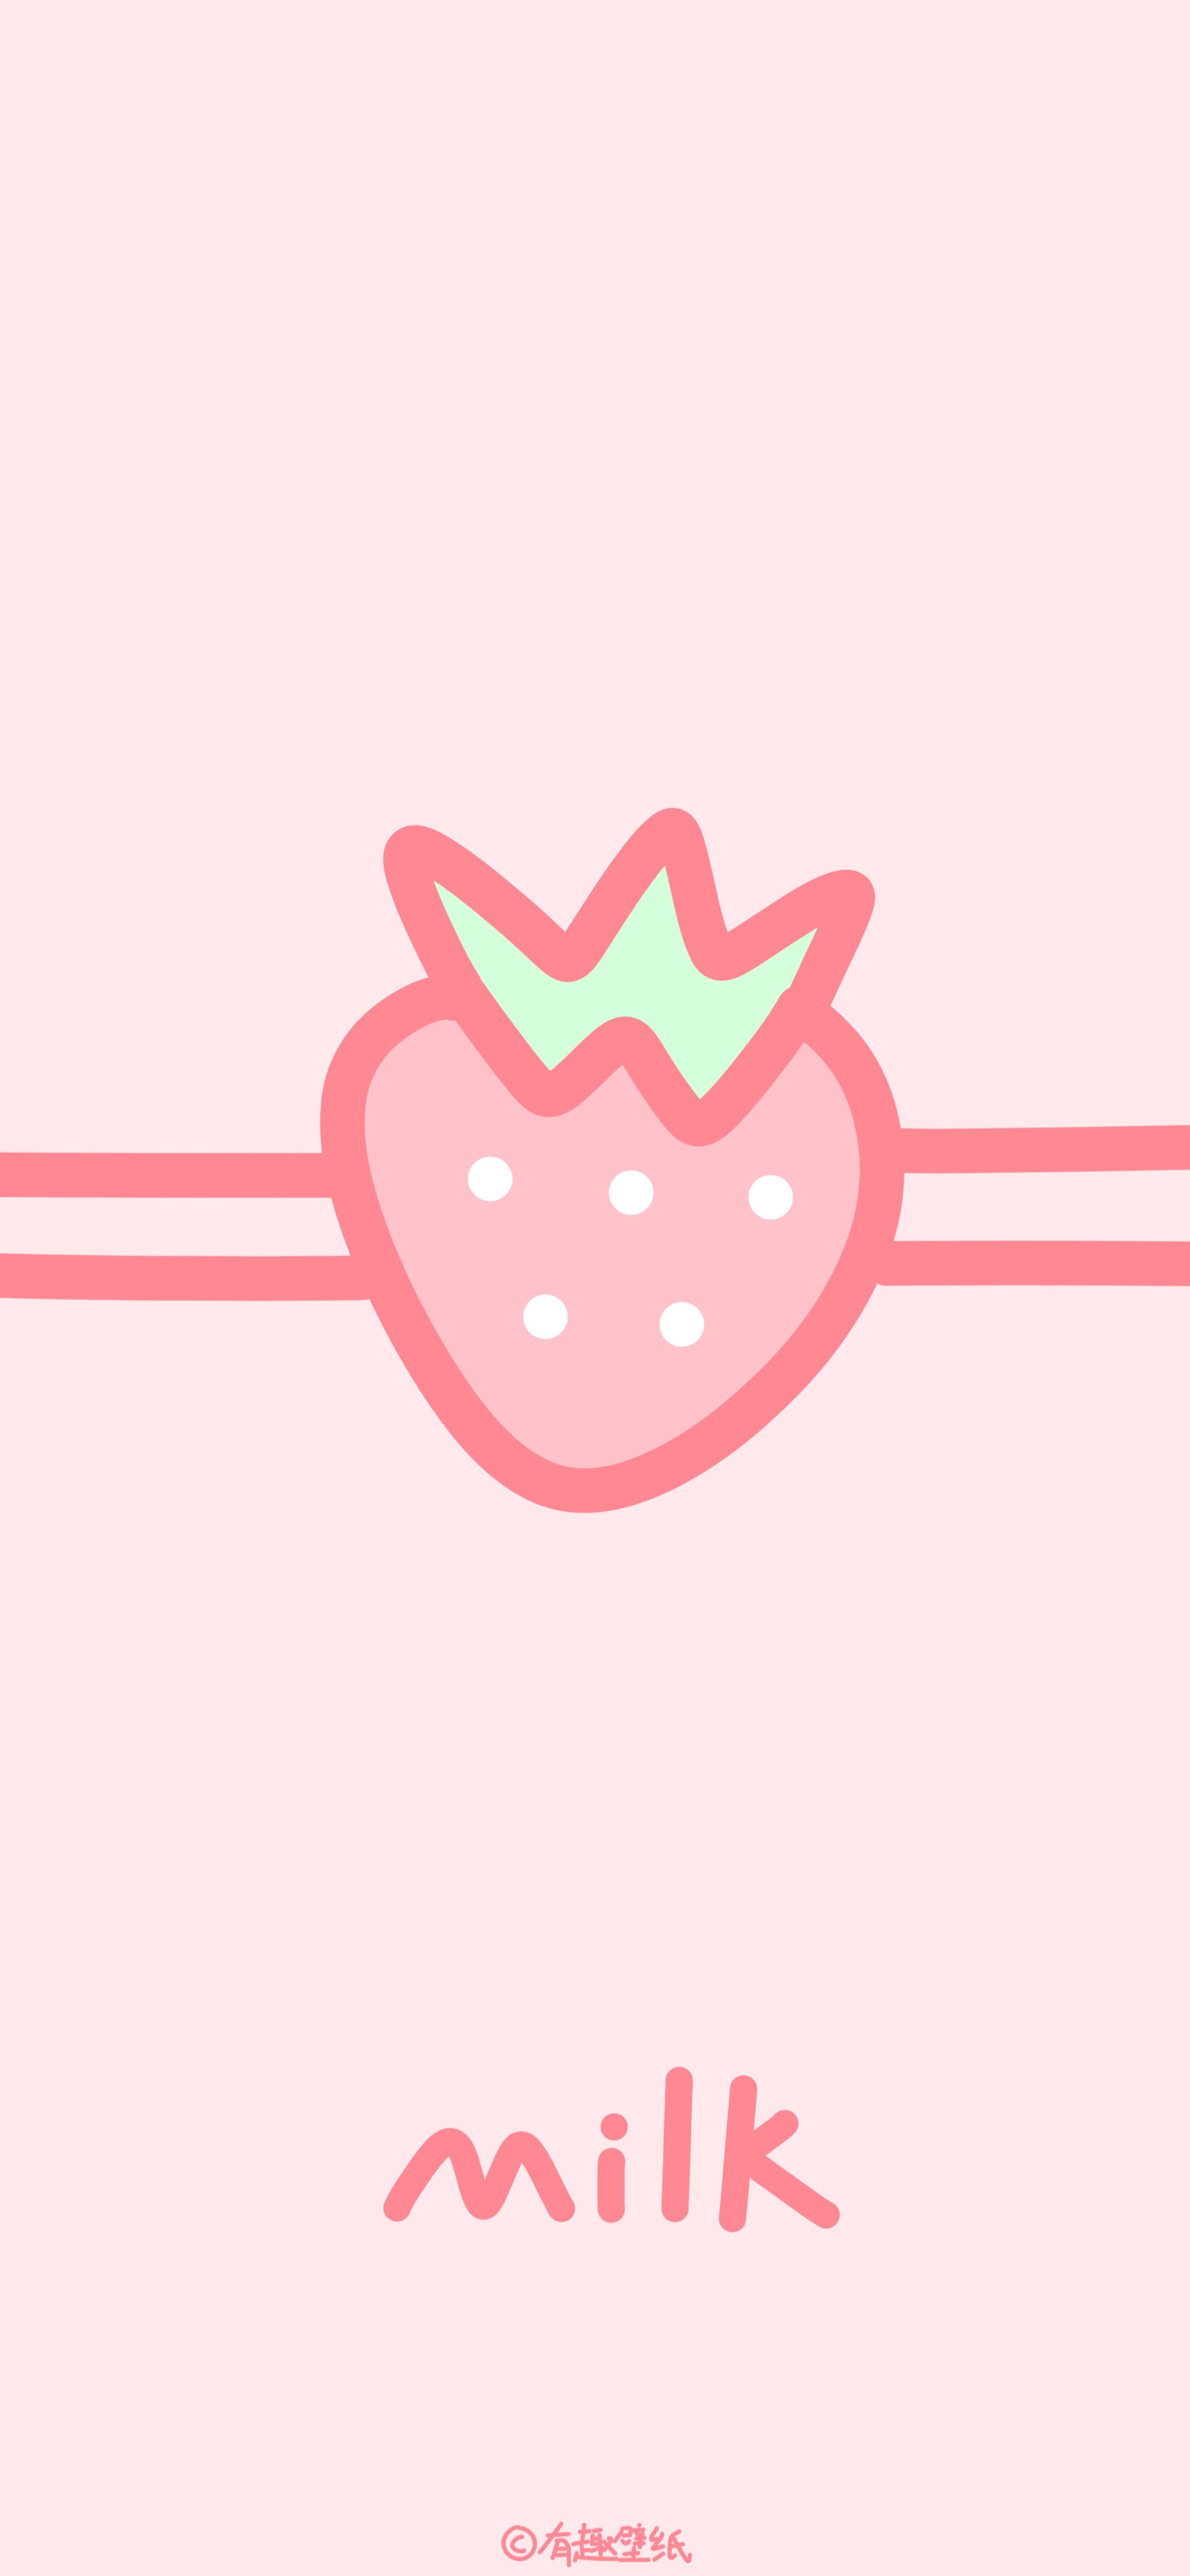 草莓牛奶图源微博:有趣壁纸